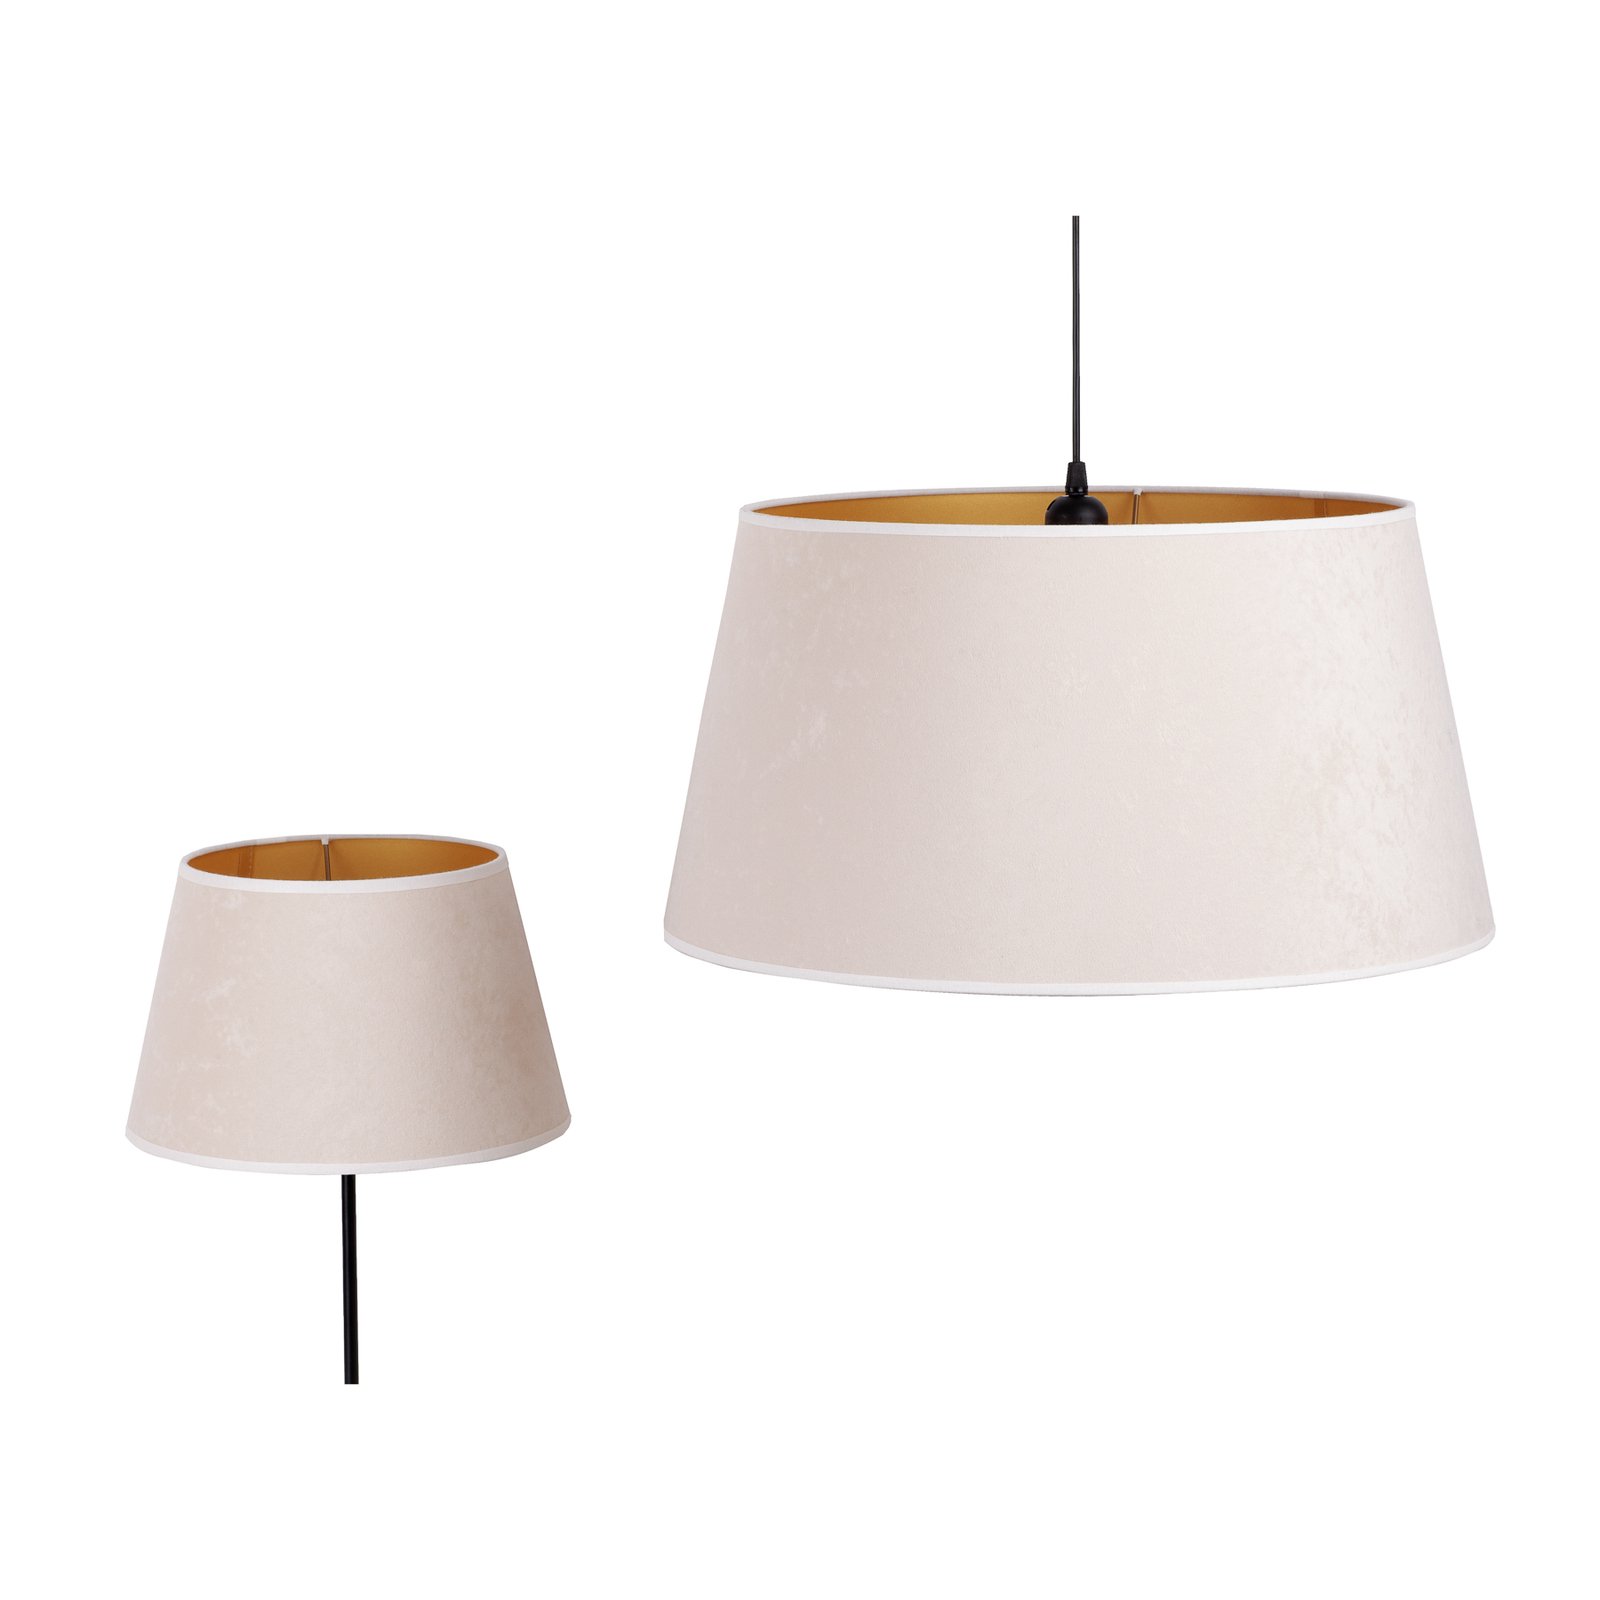 Cone lampshade height 25.5 cm, ecru/gold